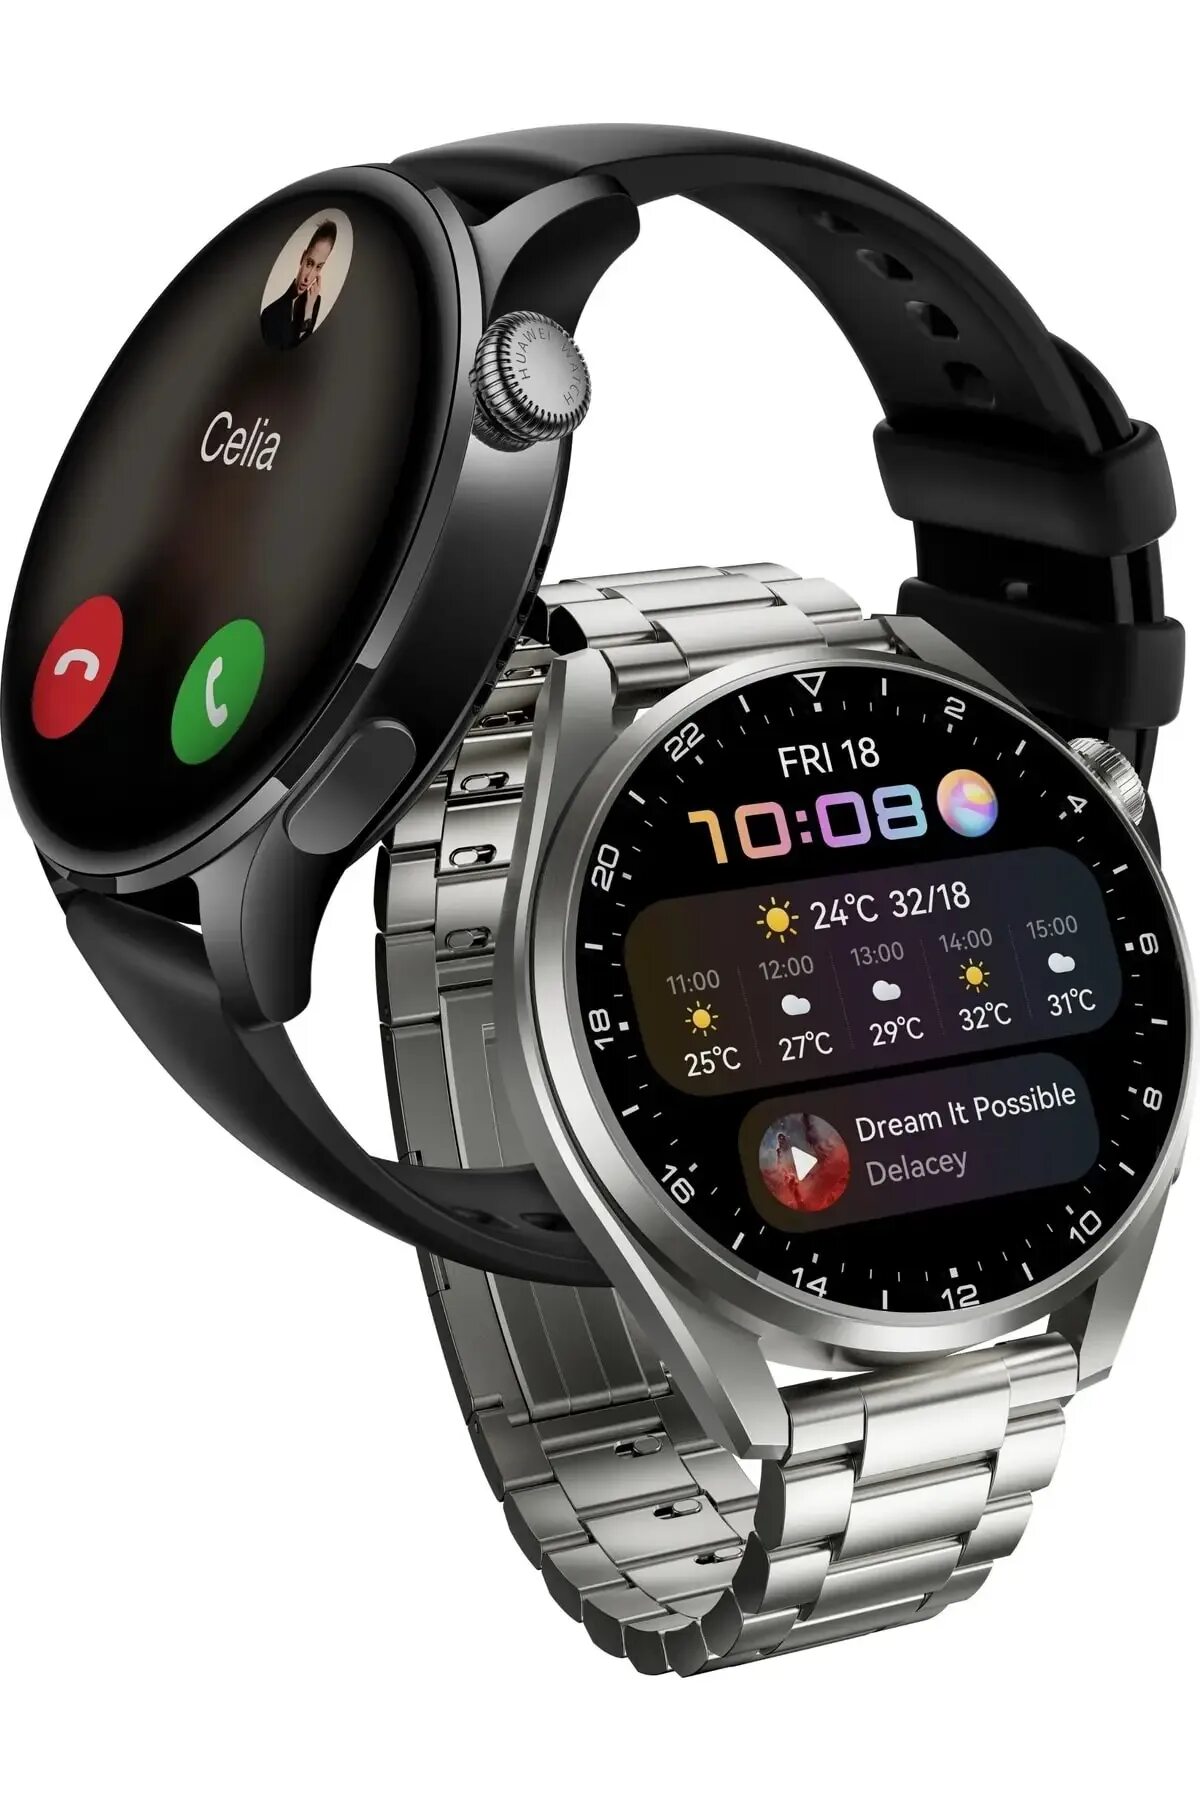 Смарт-часы Хуавей gt3. Смарт часы Хуавей вотч gt 3. Часы Huawei gt3 Pro. Часы Хуавей gt3.